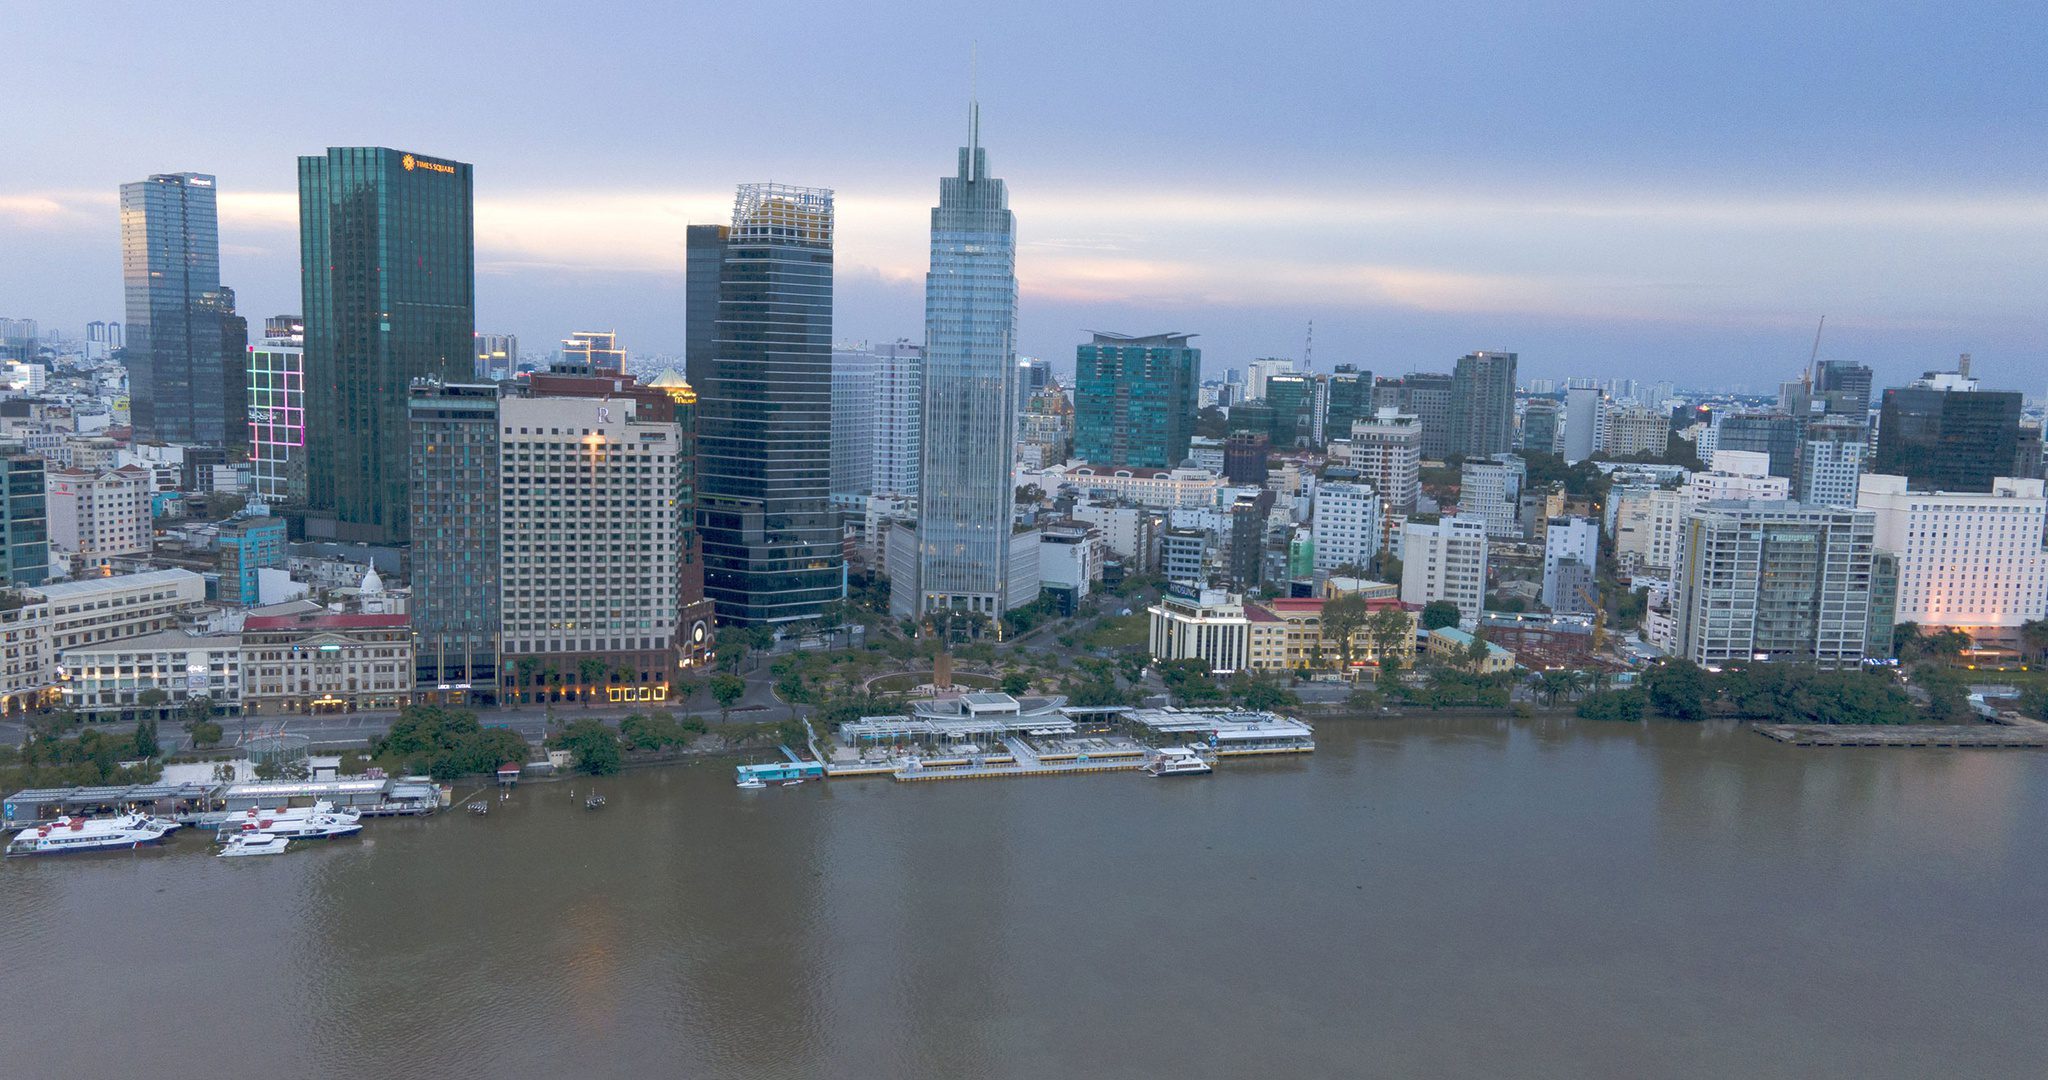 Kỳ vọng đô thị dọc sông Sài Gòn: Mở đại lộ ven sông - ảnh 1